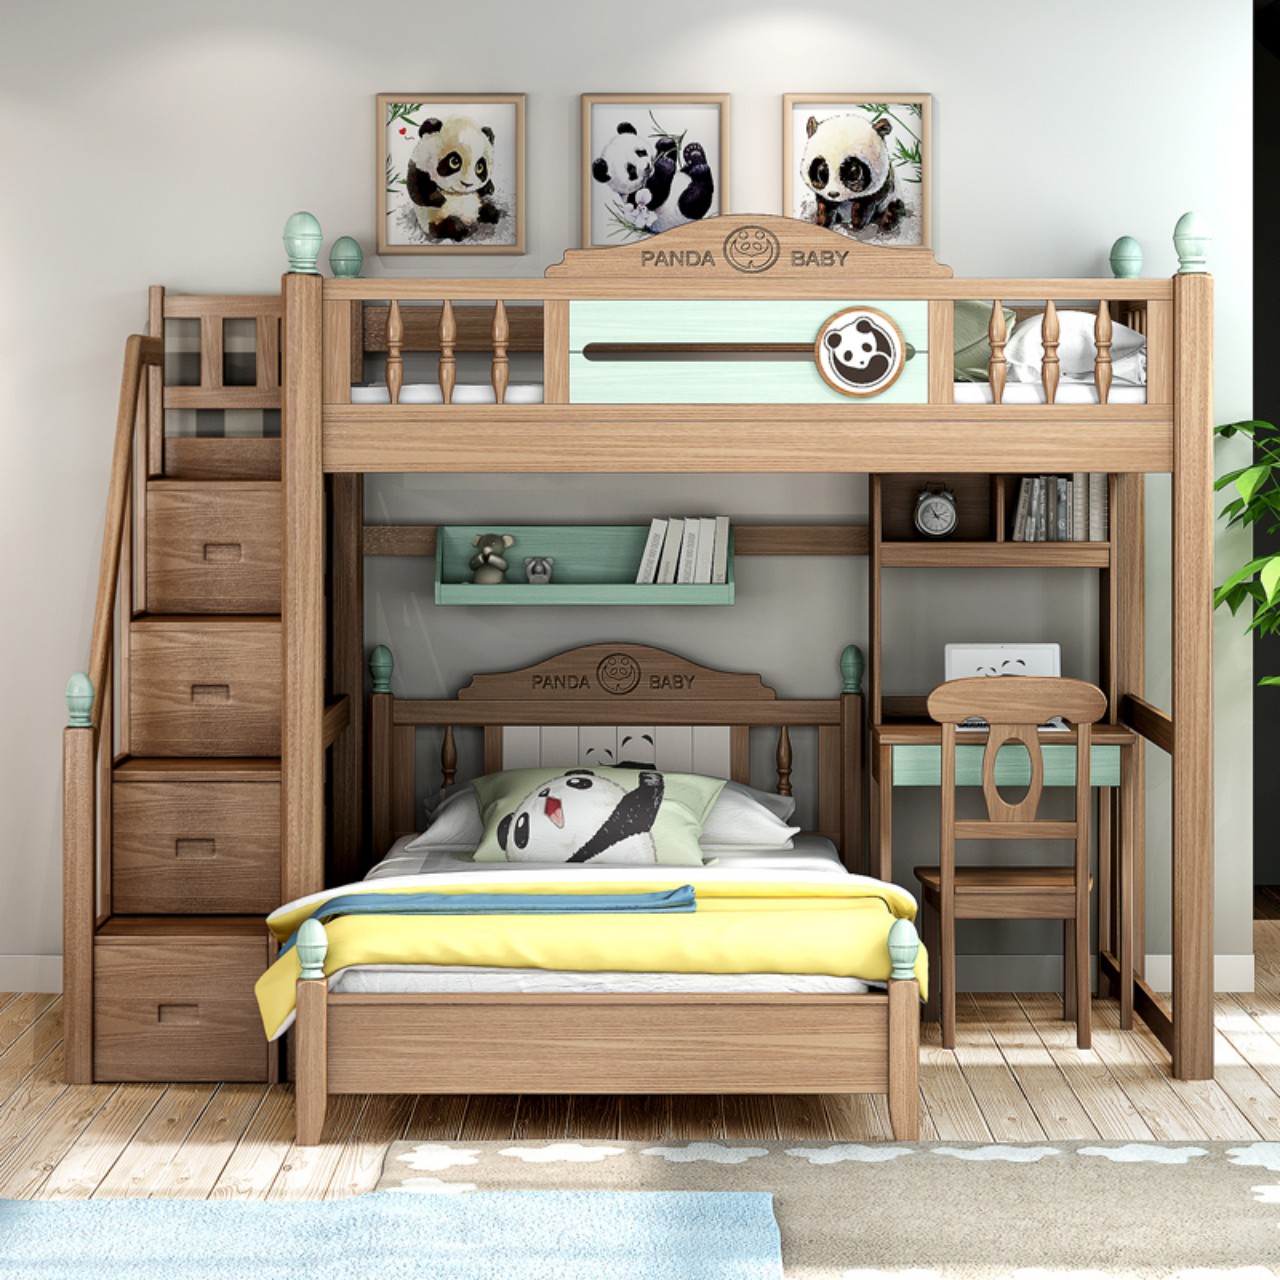 Mẫu giường tầng cho bé bằng gỗ đẹp